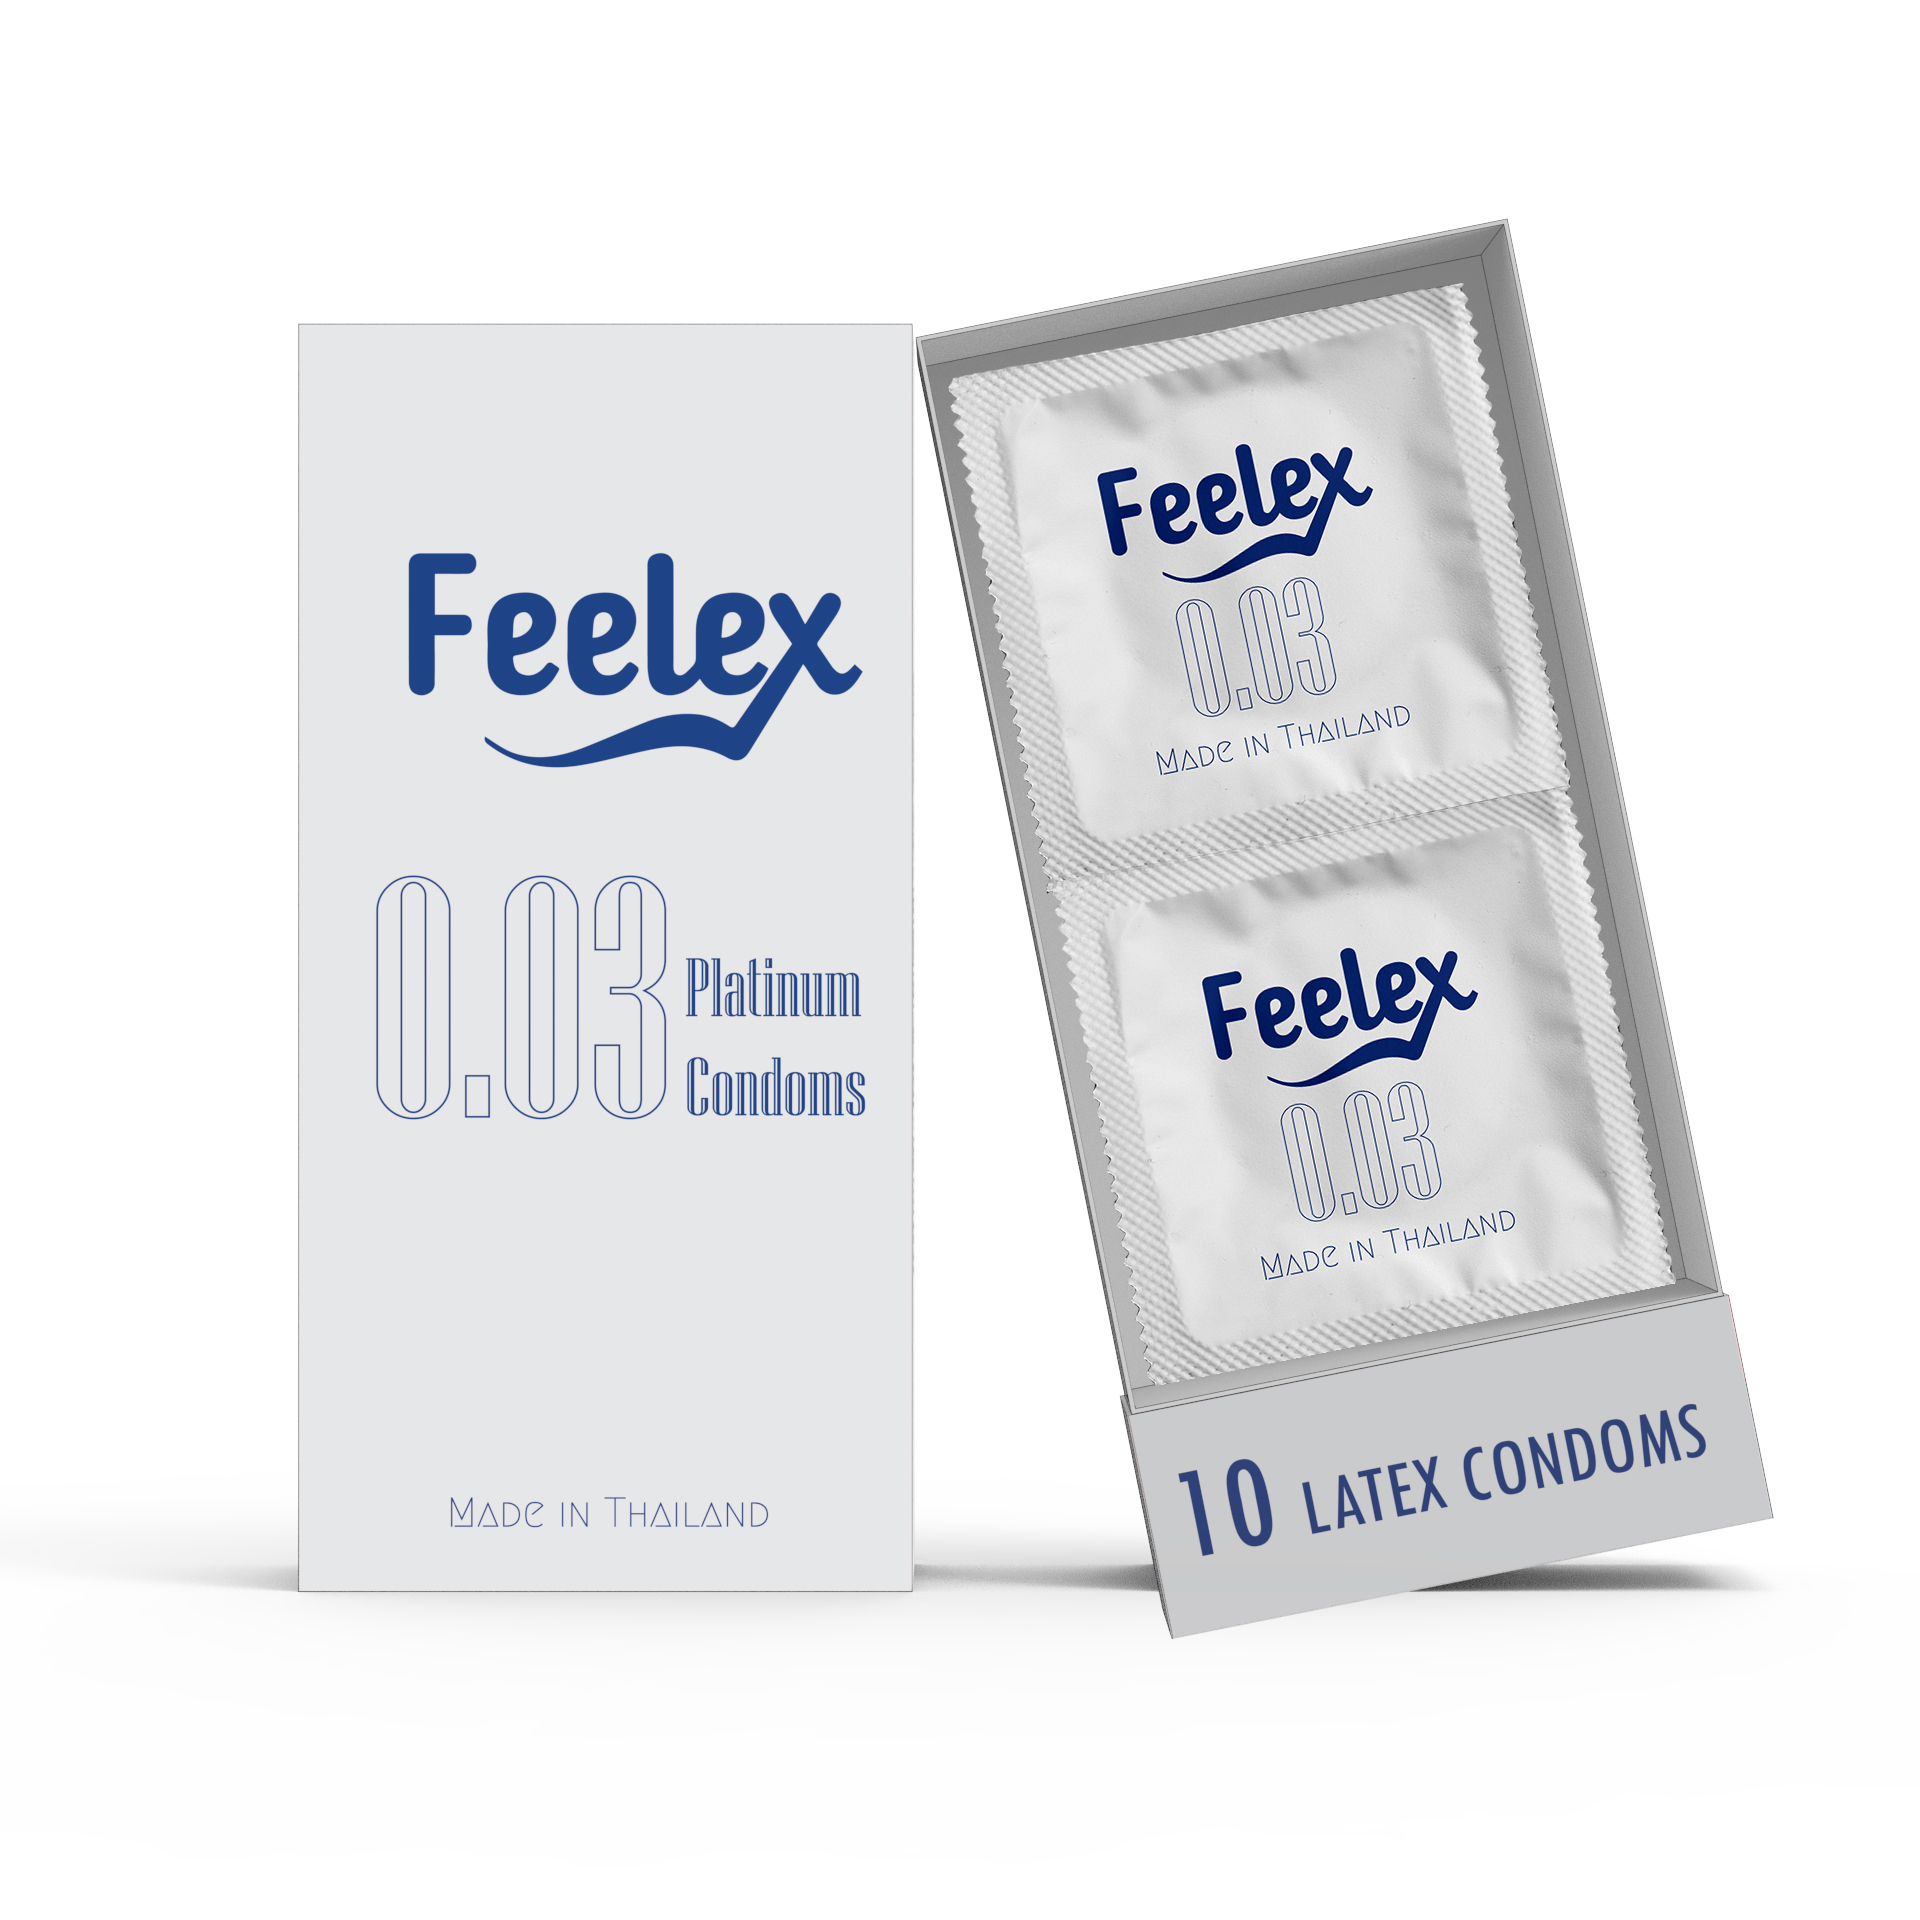 Bao cao su Feelex 0.03 Platinum, siêu mỏng, nhiều gel bôi trơn, xuất xứ Thái Lan